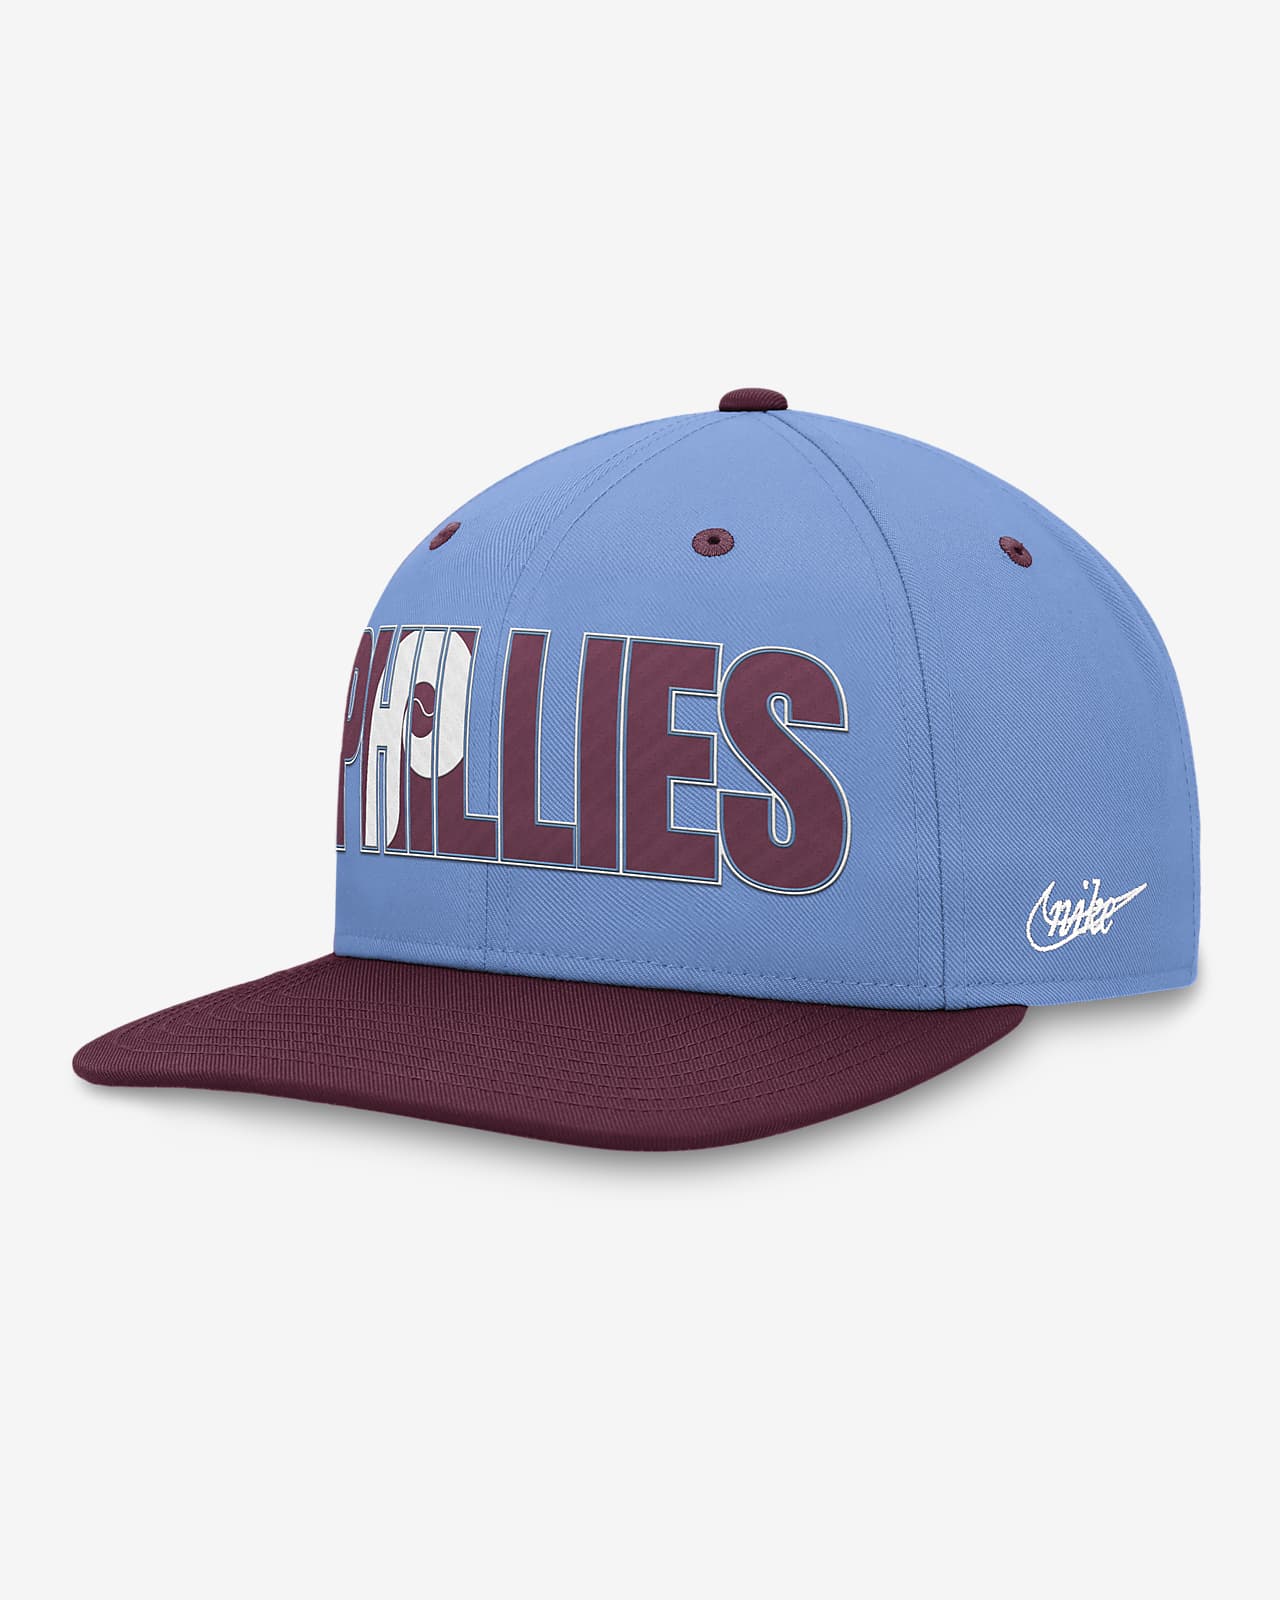 Philadelphia Phillies Pro Cooperstown Men's Nike MLB Adjustable Hat